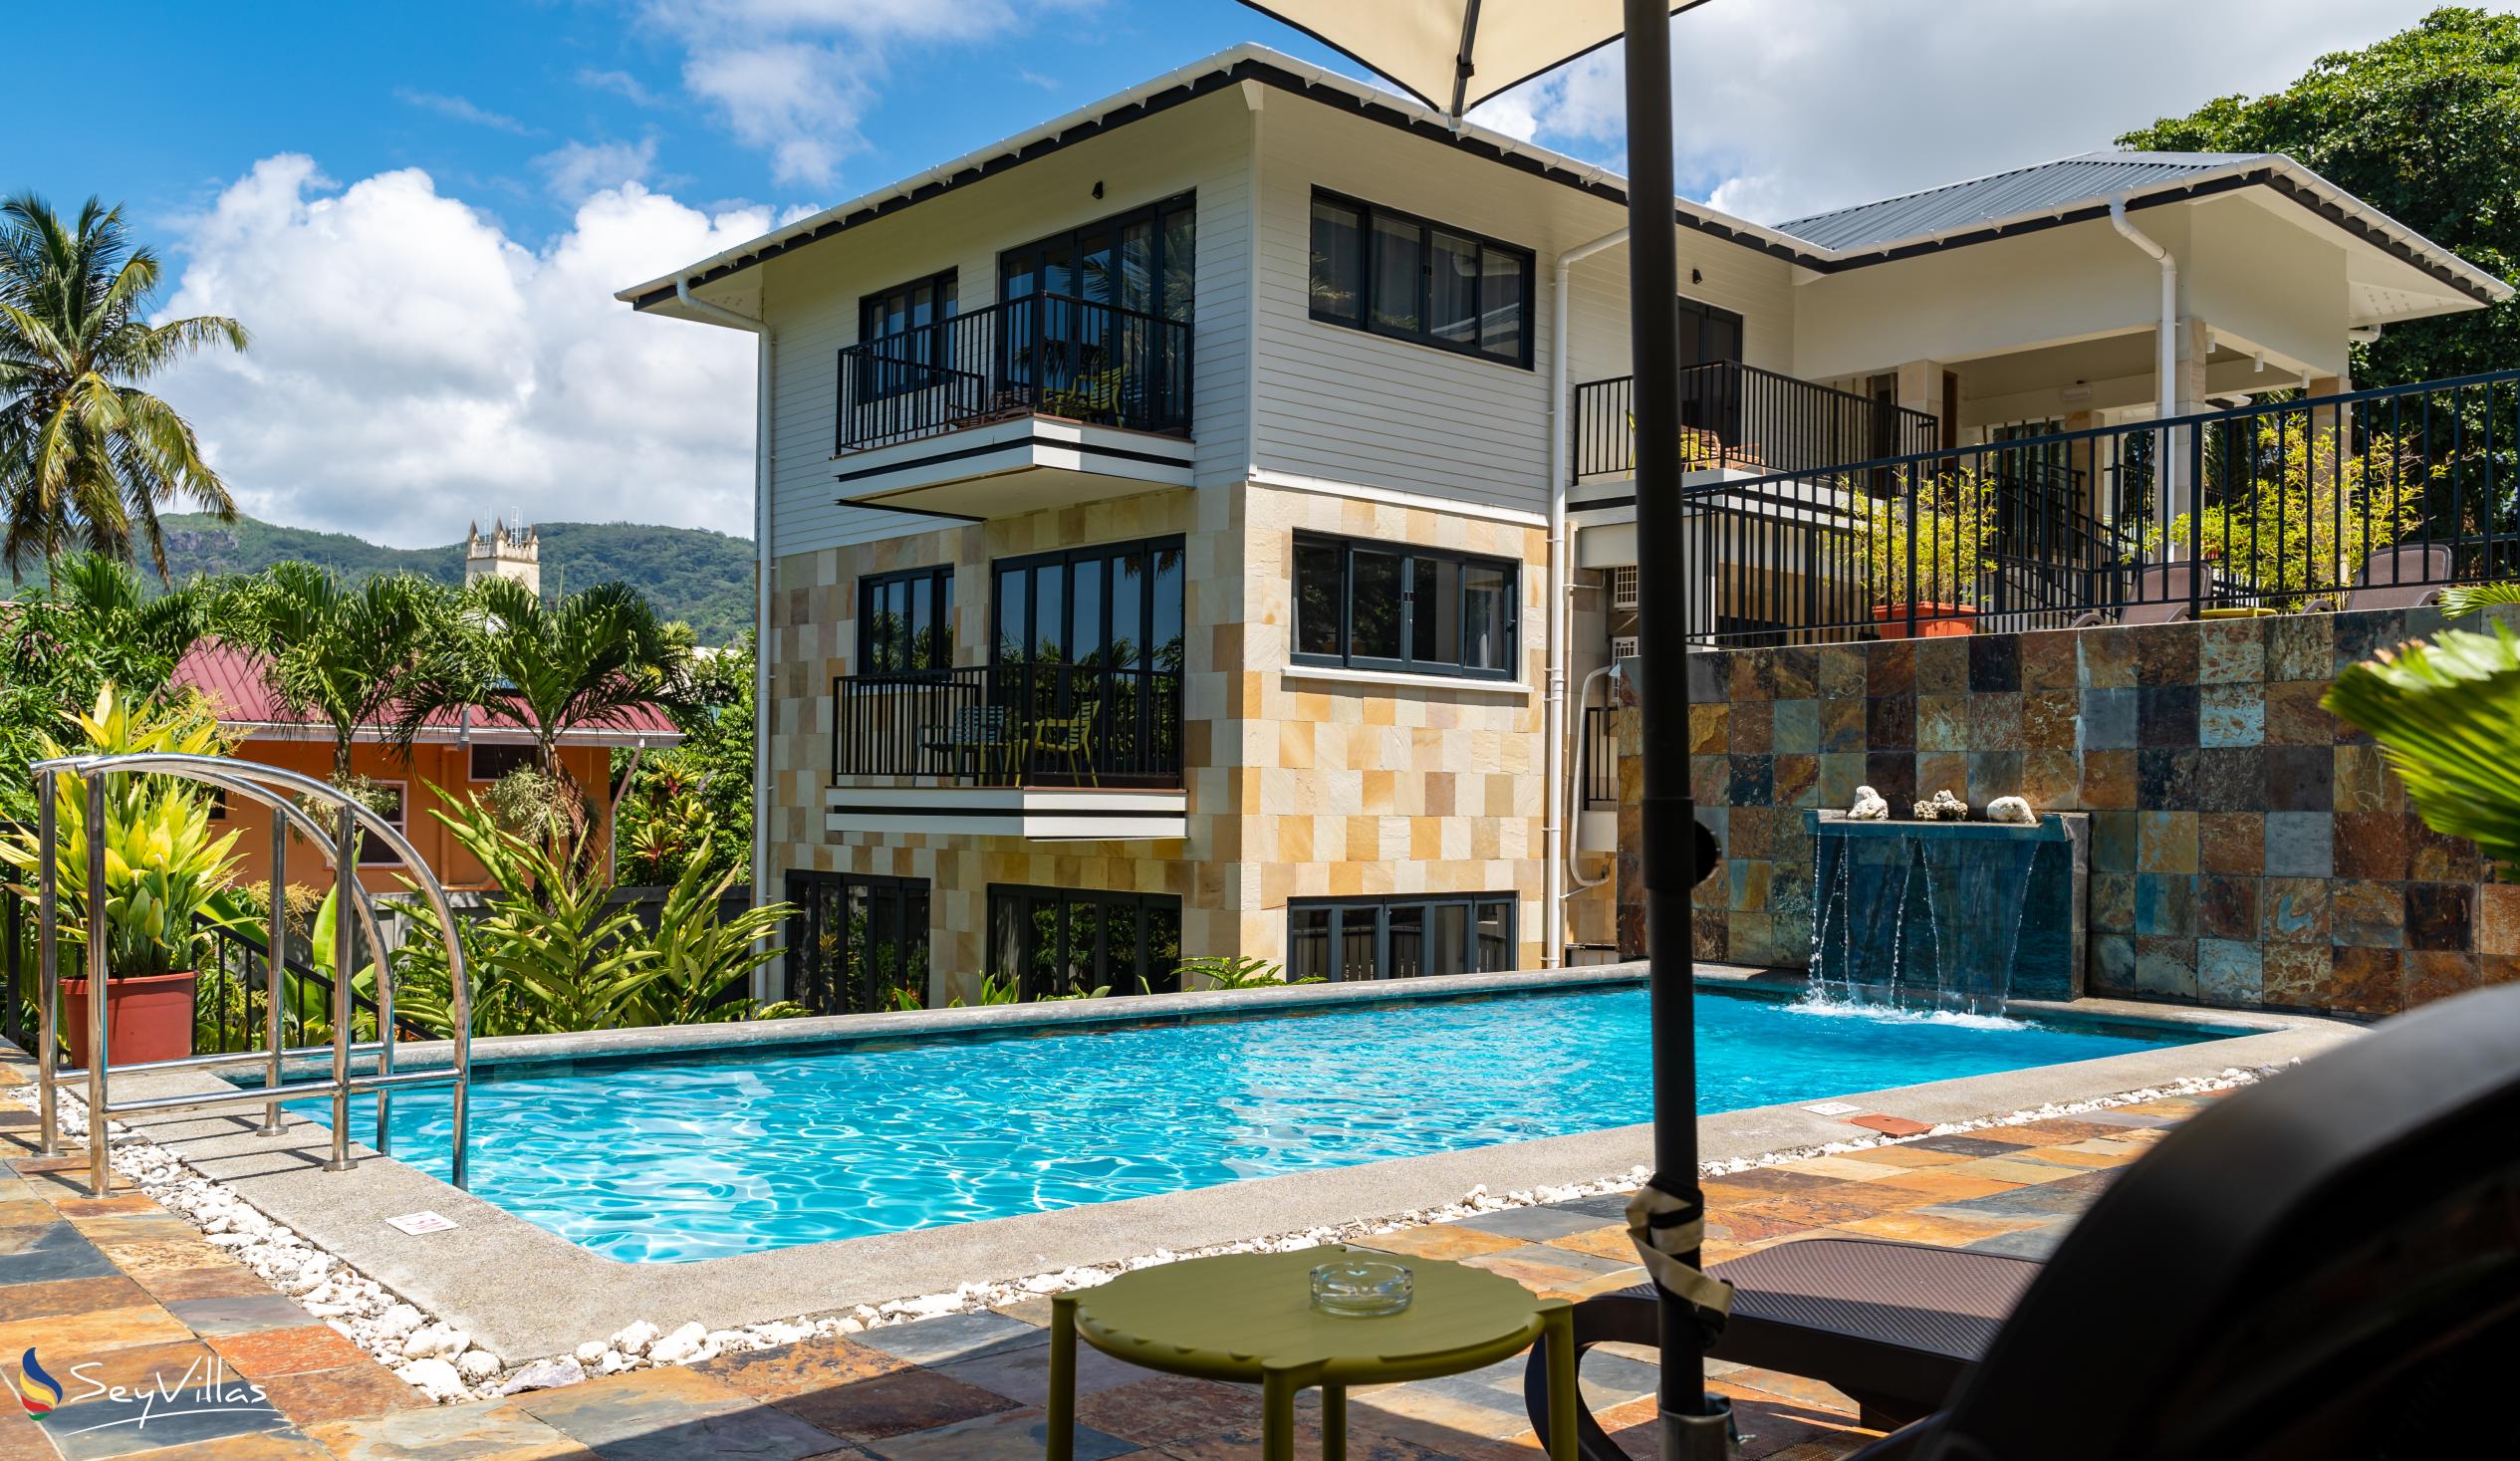 Photo 3: Lodoicea Apartments - Outdoor area - Mahé (Seychelles)